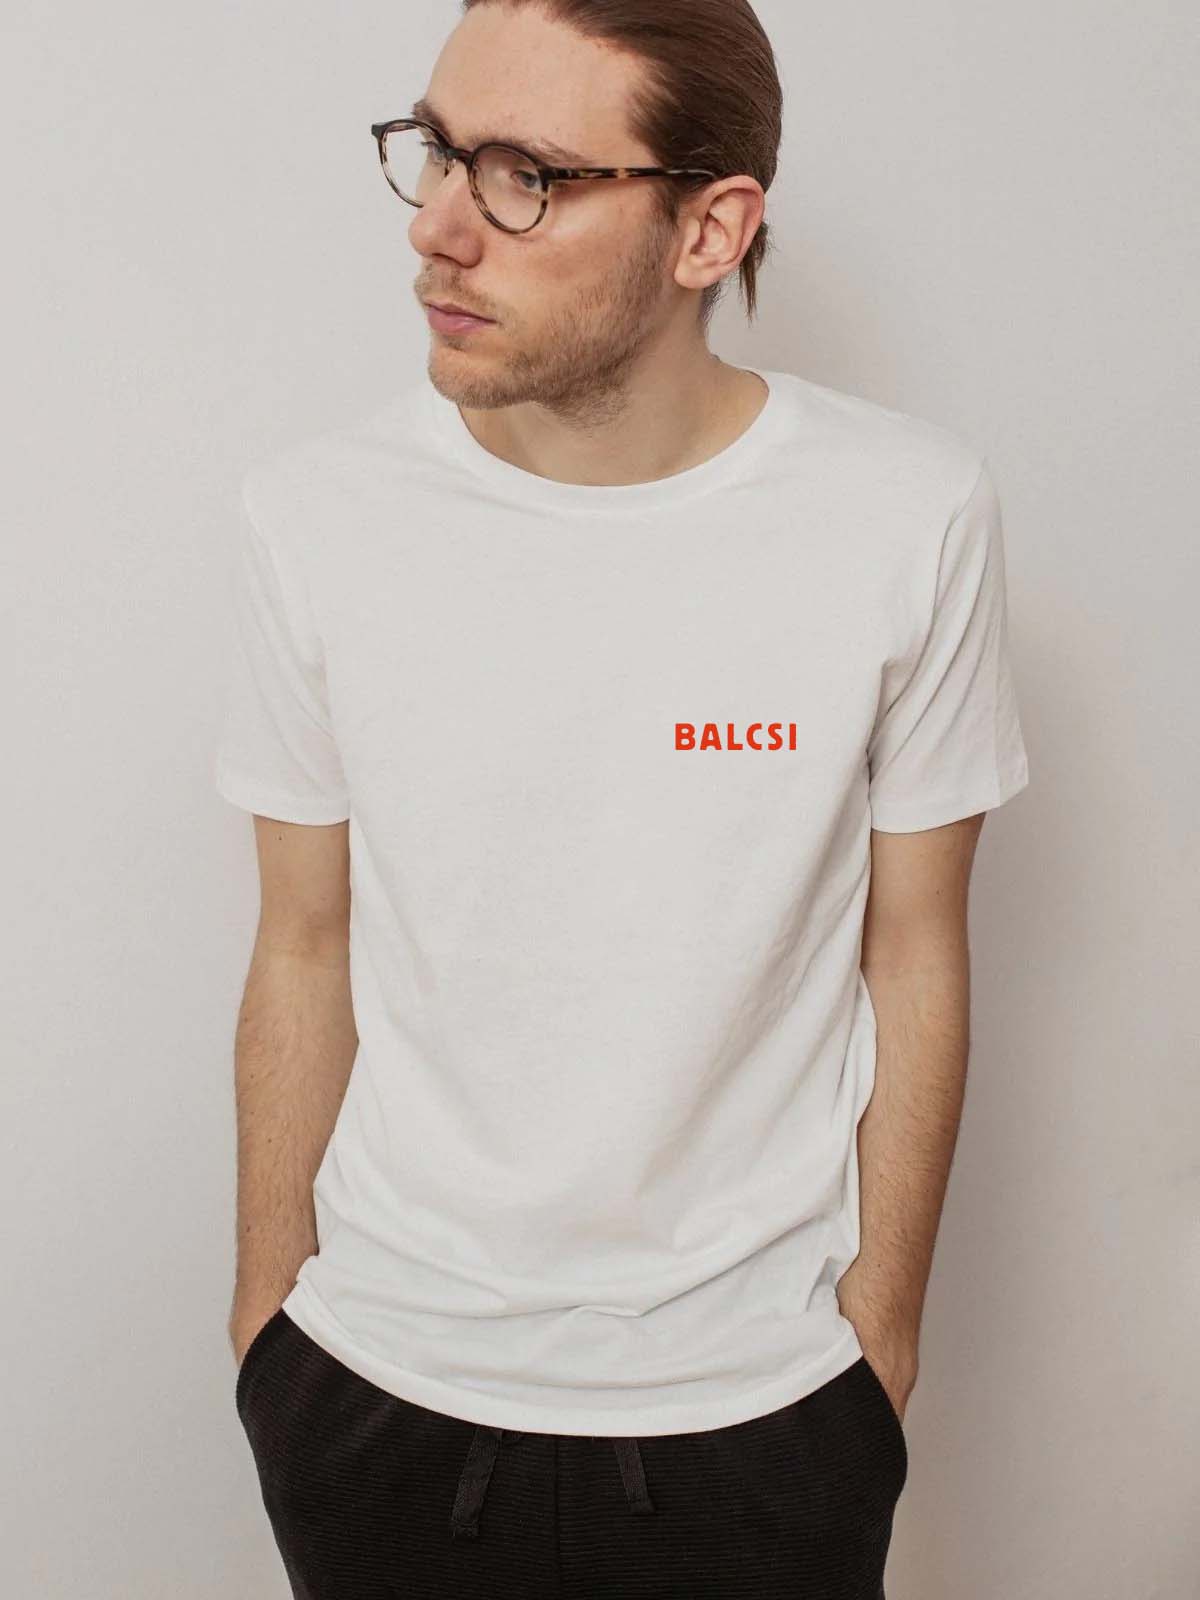 BALCSI white t-shirt